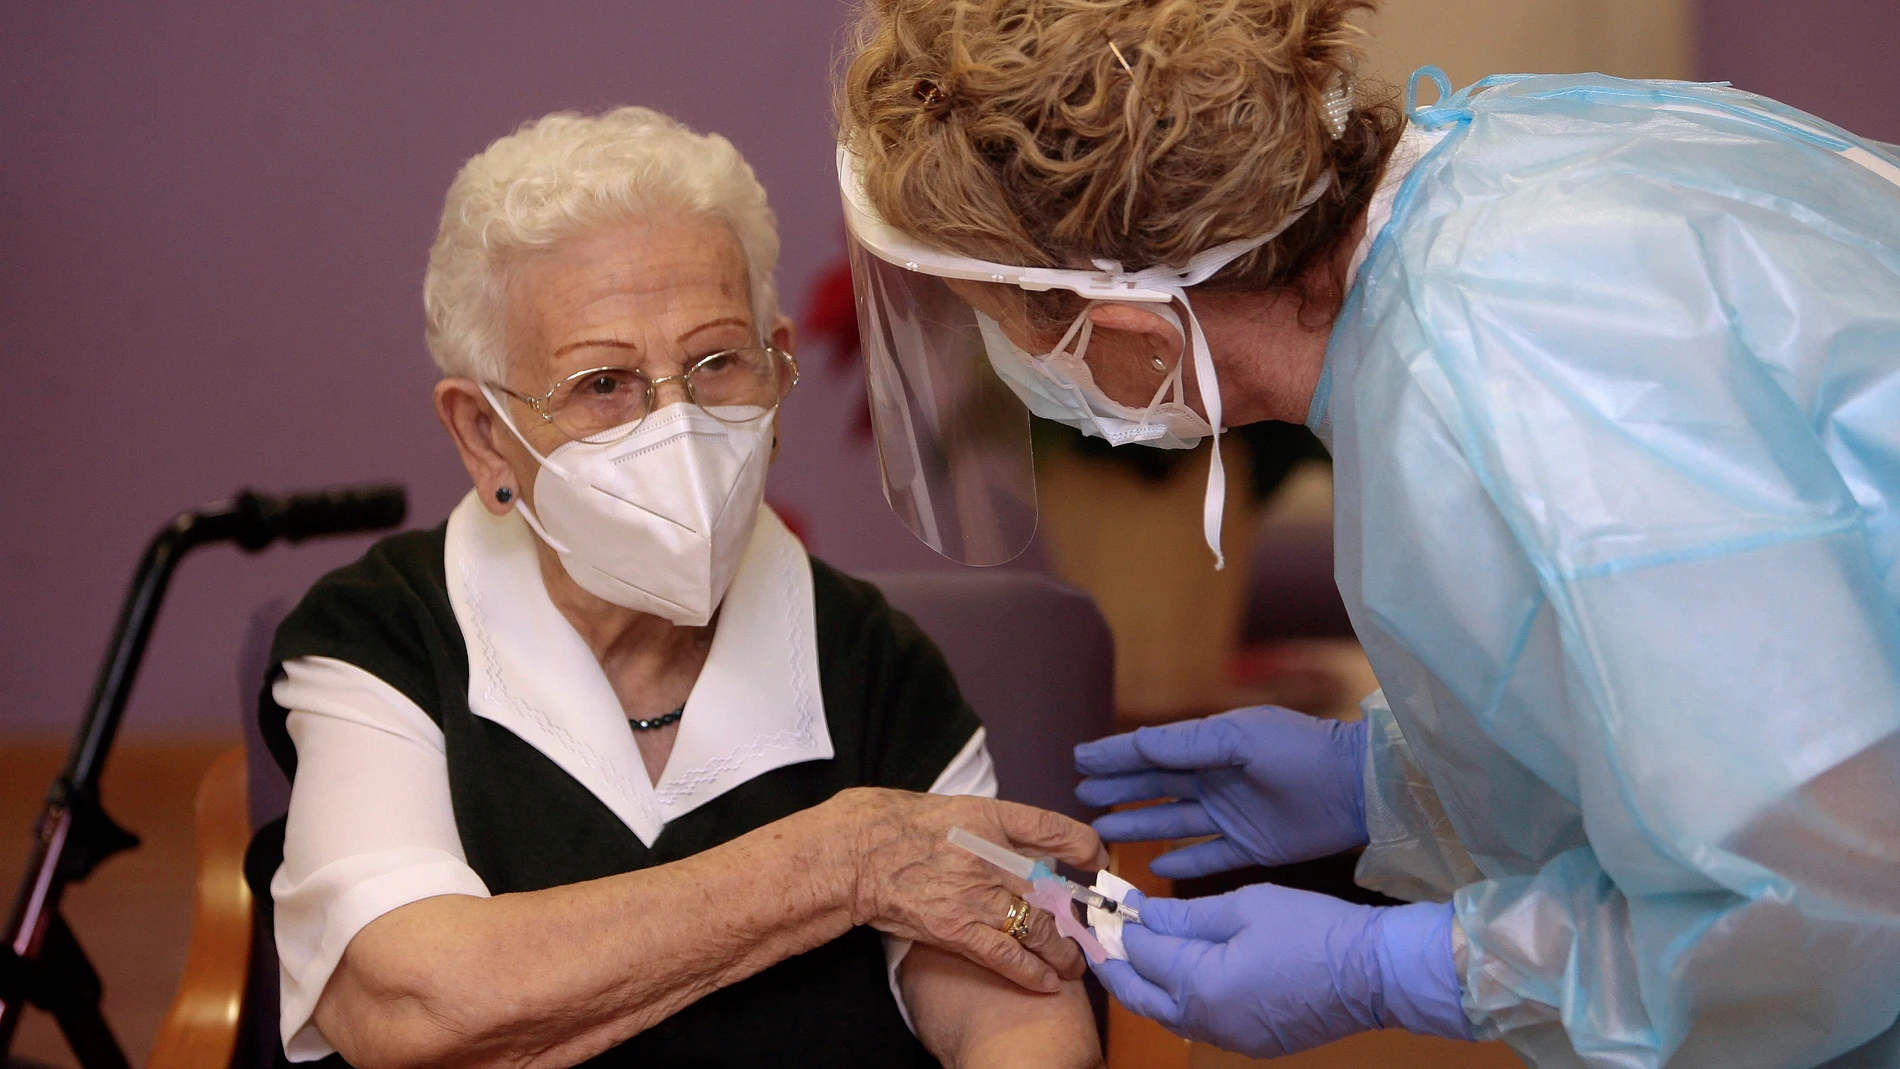 Araceli, de 96 años, primera persona vacunada contra el COVID-19 en España, el primer día de vacunación, en la residencia de mayores Los Olmos de Guadalajara, en Castilla La-Mancha (España), a 27 de diciembre de 2020.